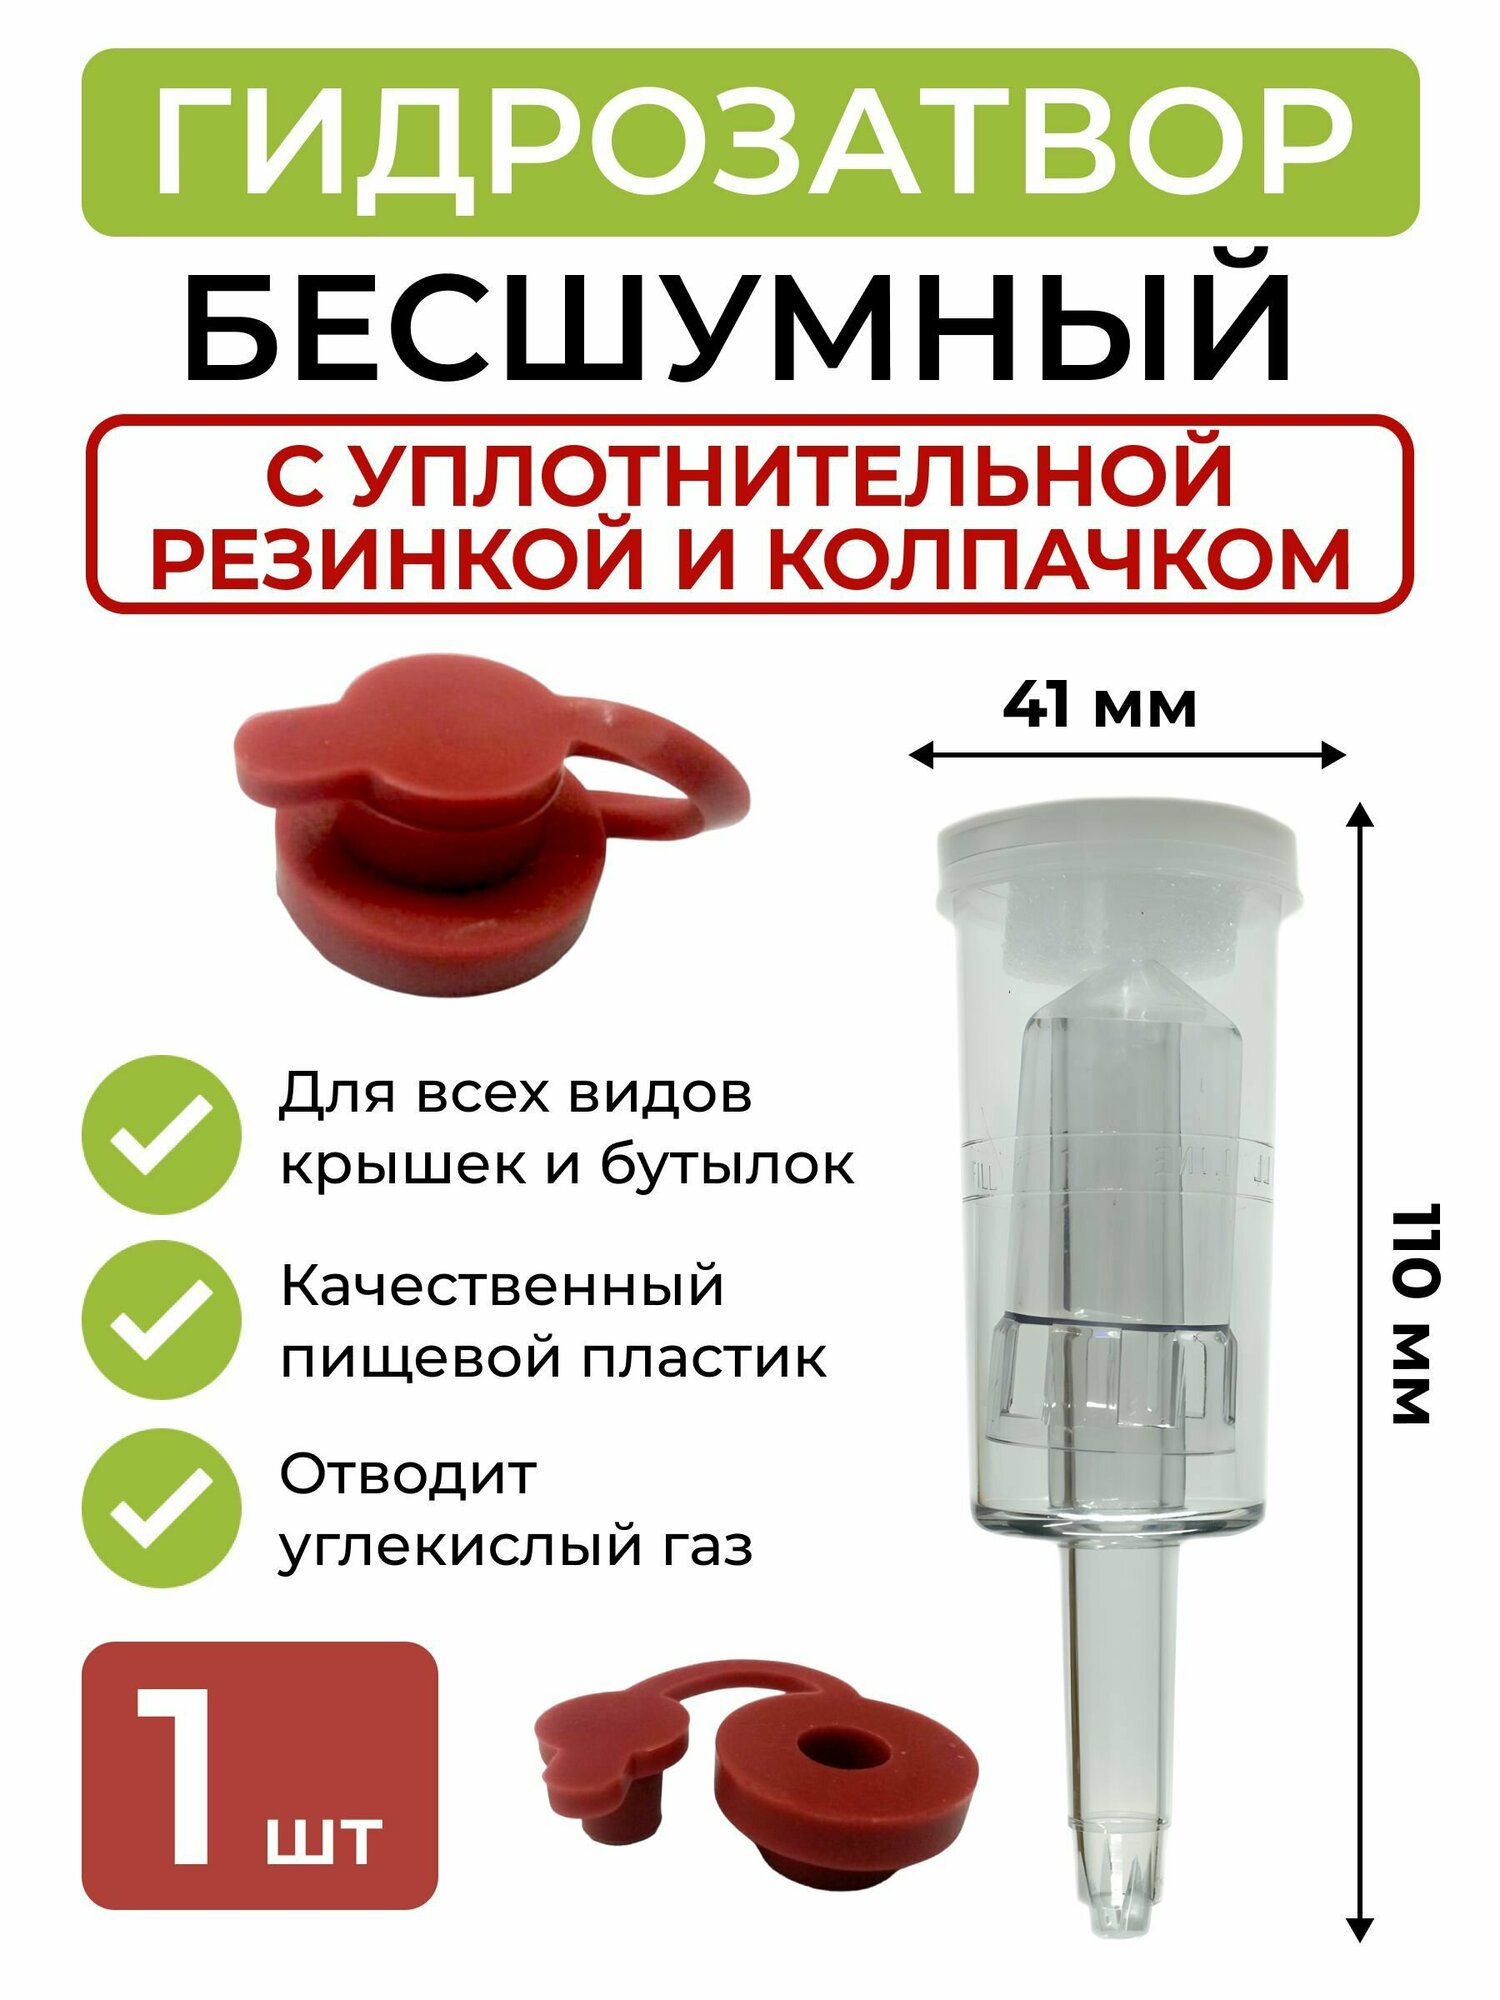 Гидрозатвор для брожения трёхкамерный с уплотнительной резинкой и колпачком